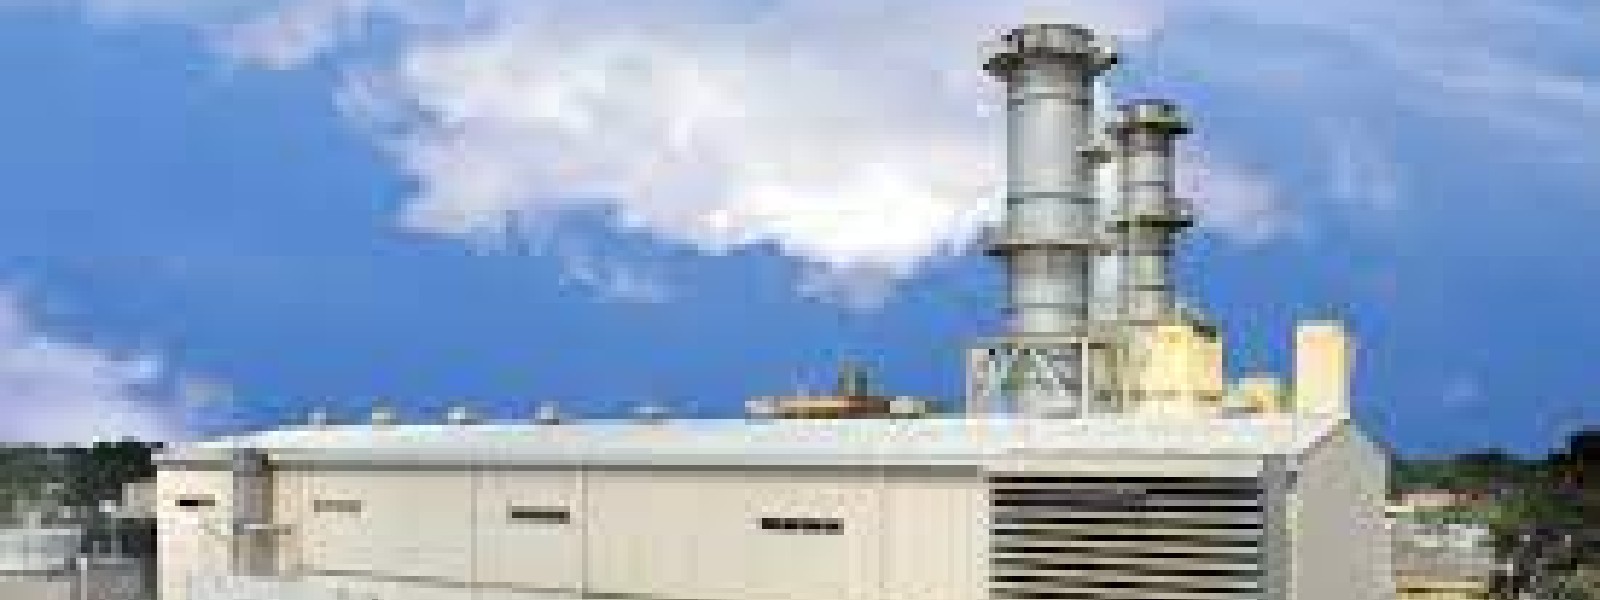 Kelanithissa Power Station shutdown as it ran out of fuel